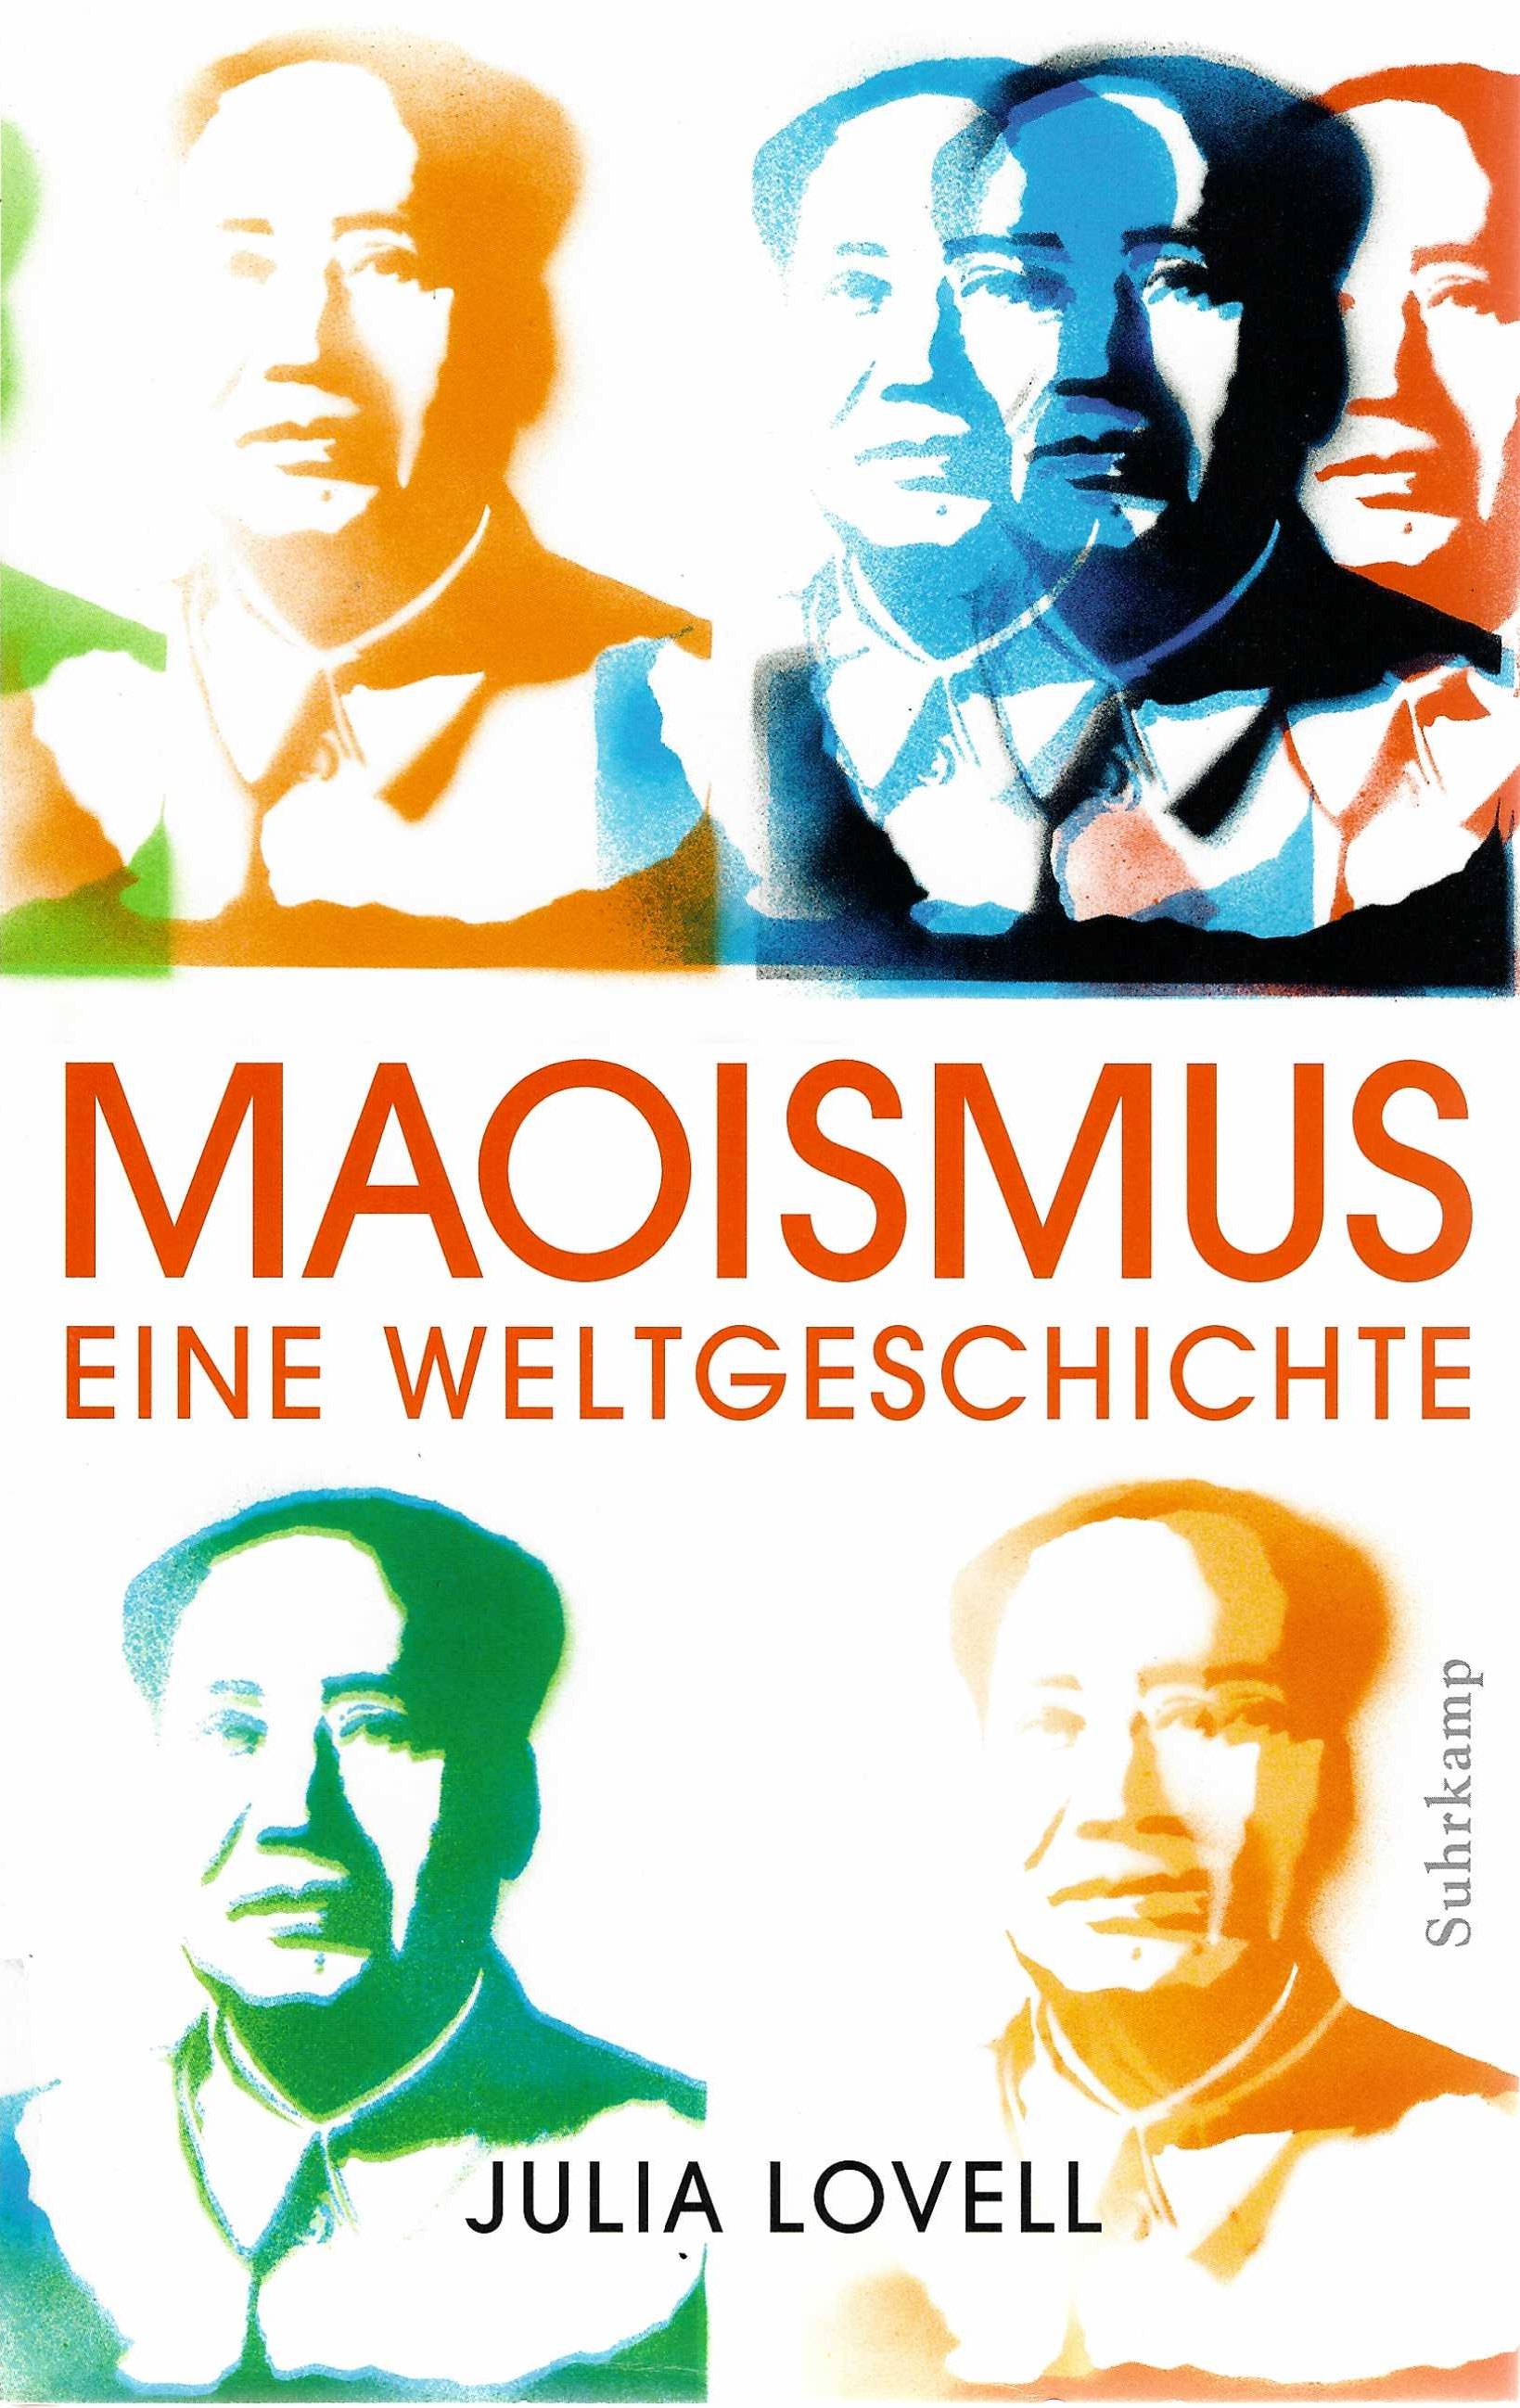 Auf dem Buchcover ist die Büste Maos vielfach abgebildet und in verschiedenen Farbtönen, in Blau, Grün und Orange, eingefärbt und stilisiert. 